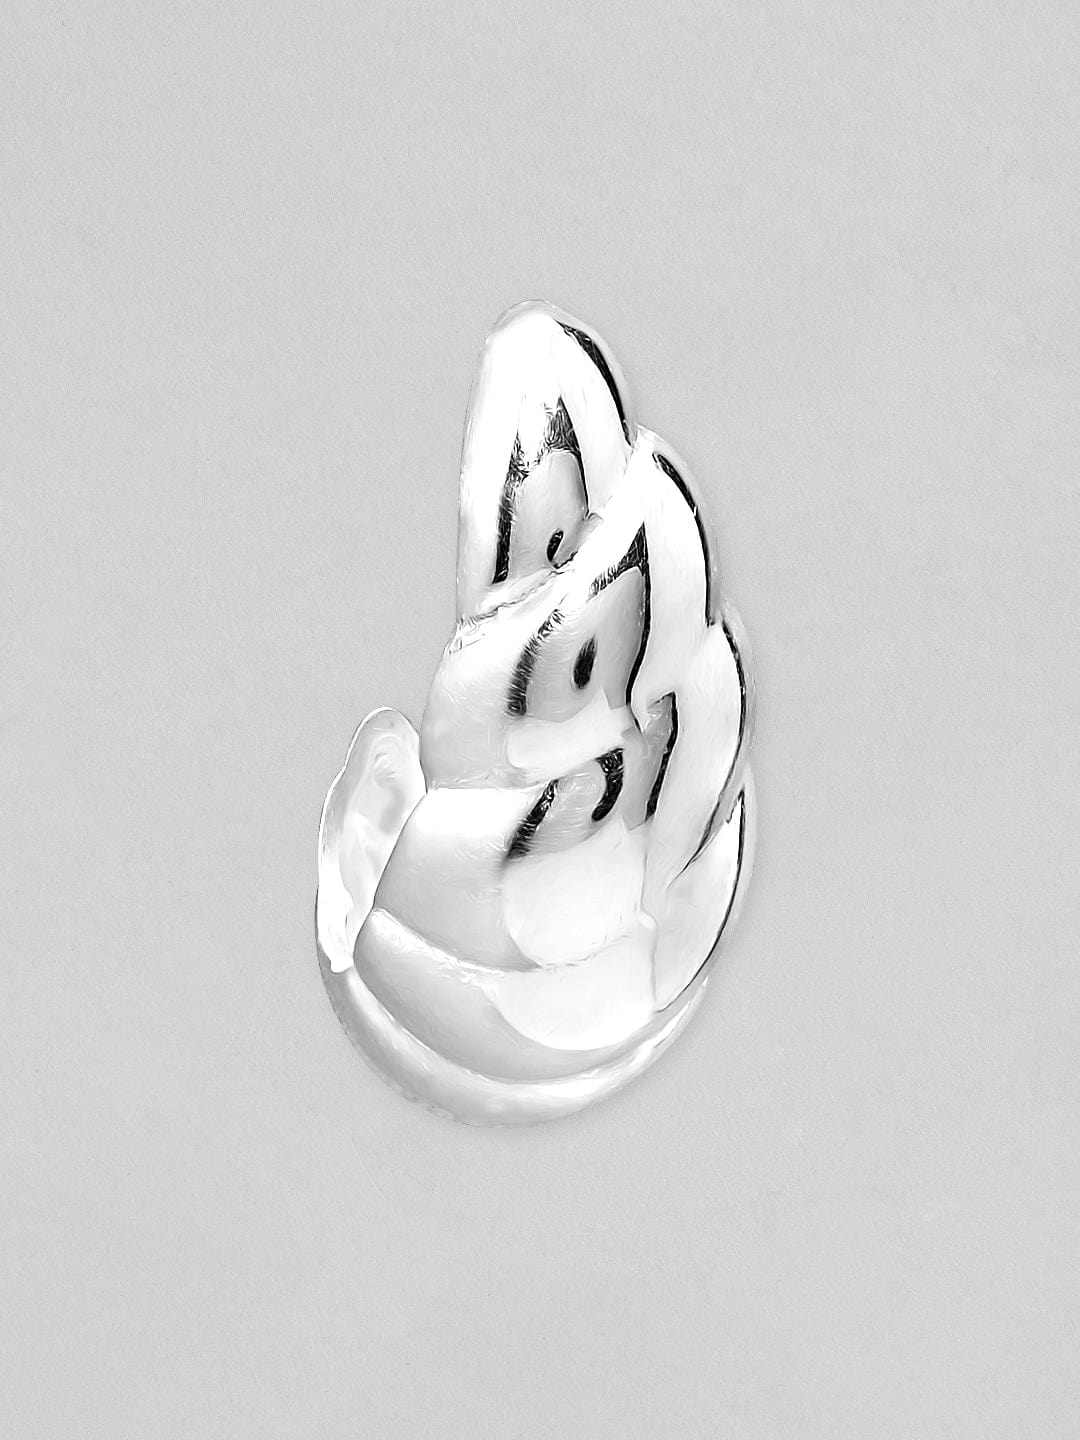 Rubans 925 Silver The Twirling Silver Beauty Hoop Earrings. Earrings